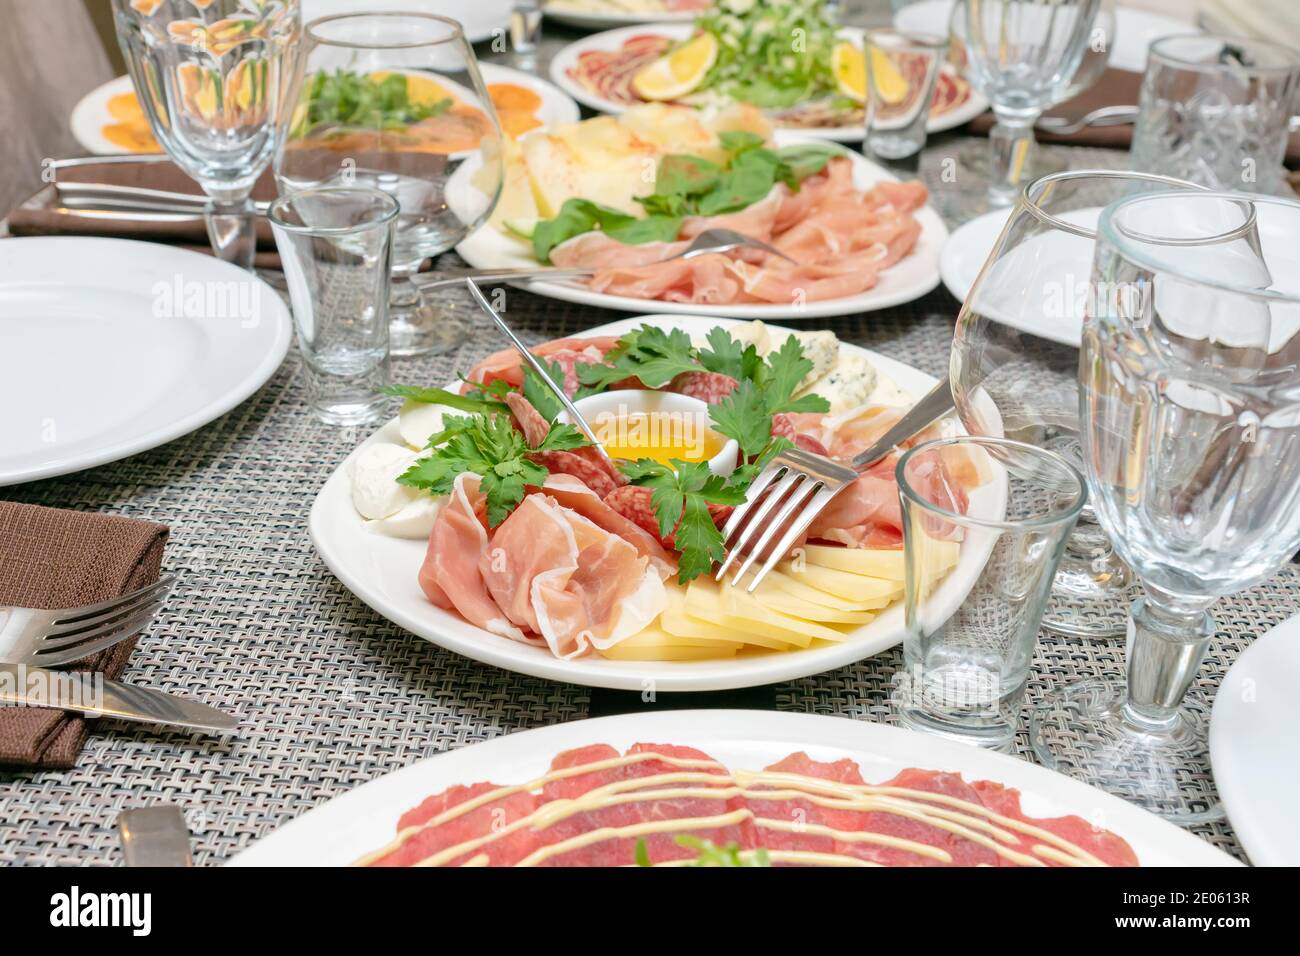 Festliche Tischstimmung, Familienessen mit italienischen Antipasti serviert - marinierter Lachs, Hamon, Carpaccio, Birne, Basilikum. Tablescape Stockfoto